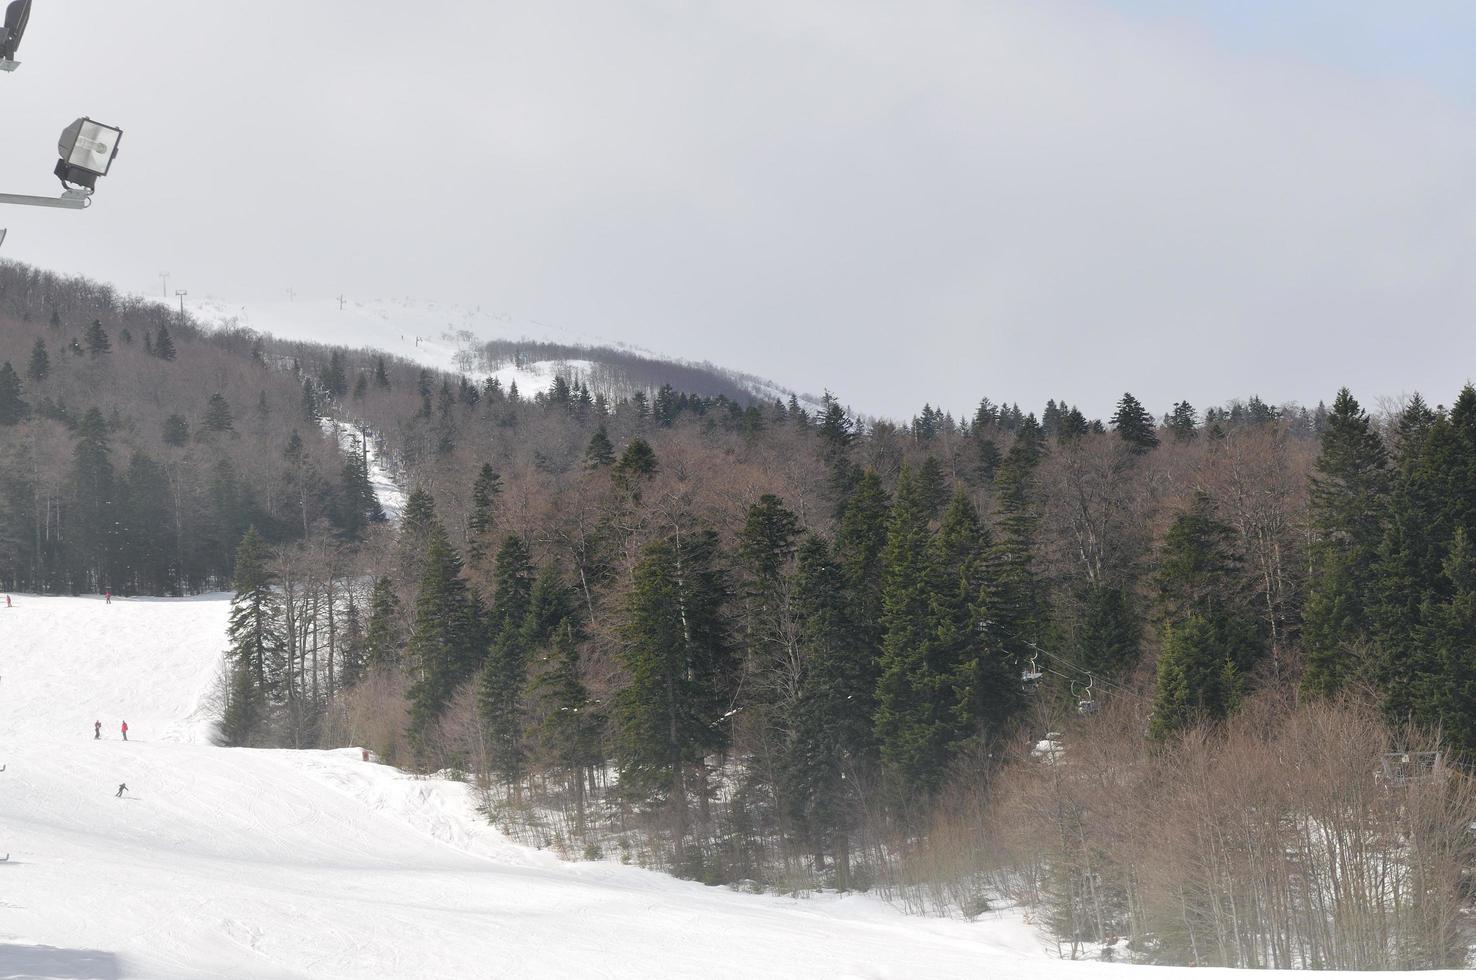 Winter landscape view photo